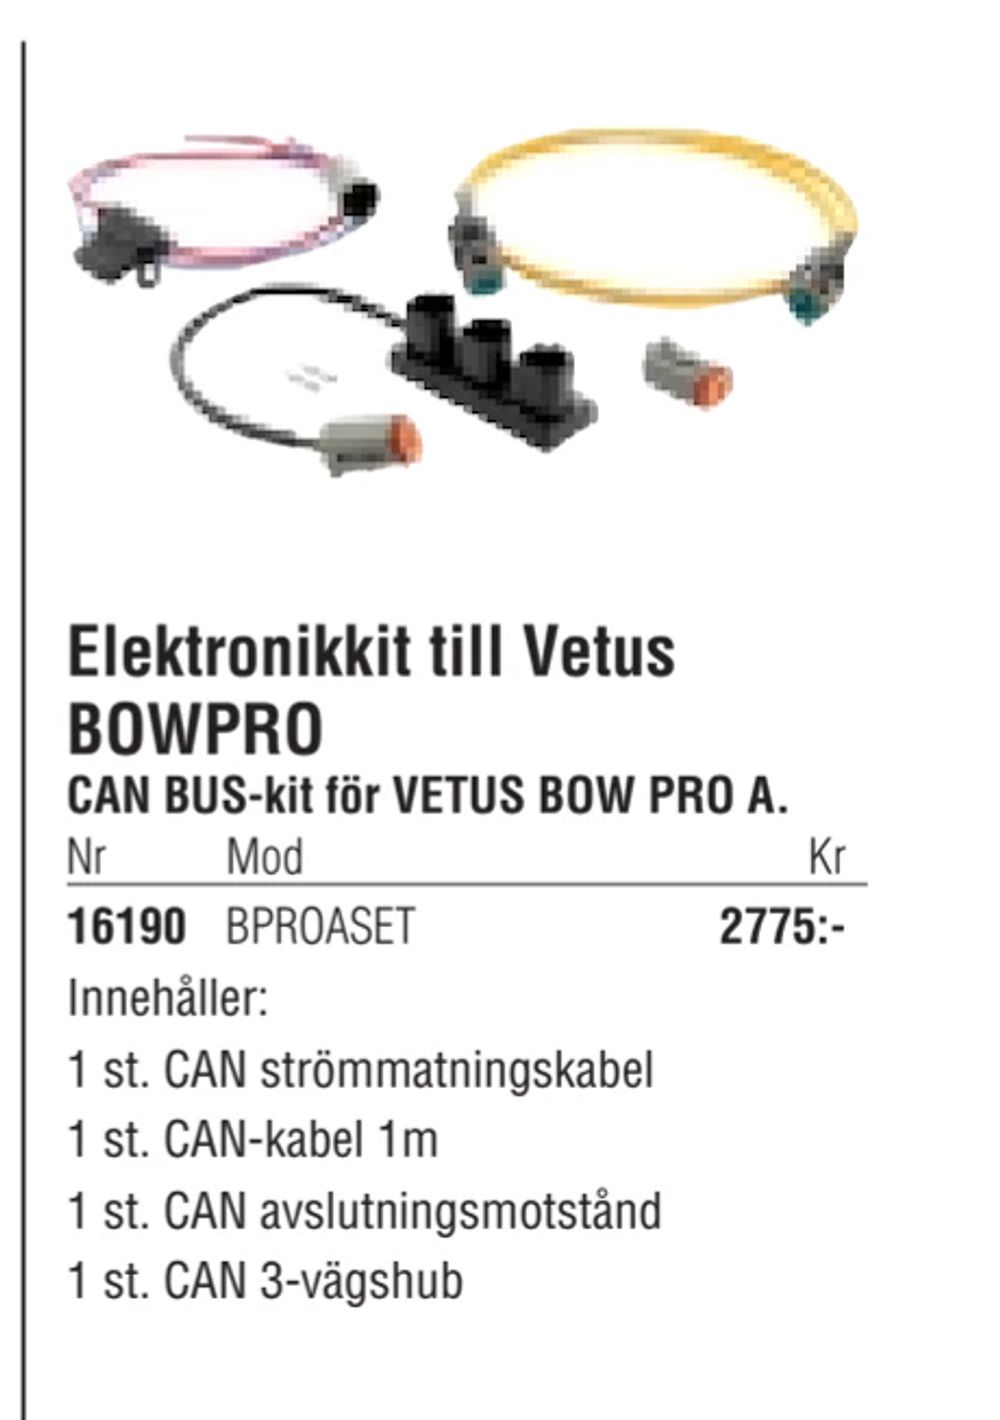 Erbjudanden på Elektronikkit till Vetus BOWPRO från Erlandsons Brygga för 2 775 kr